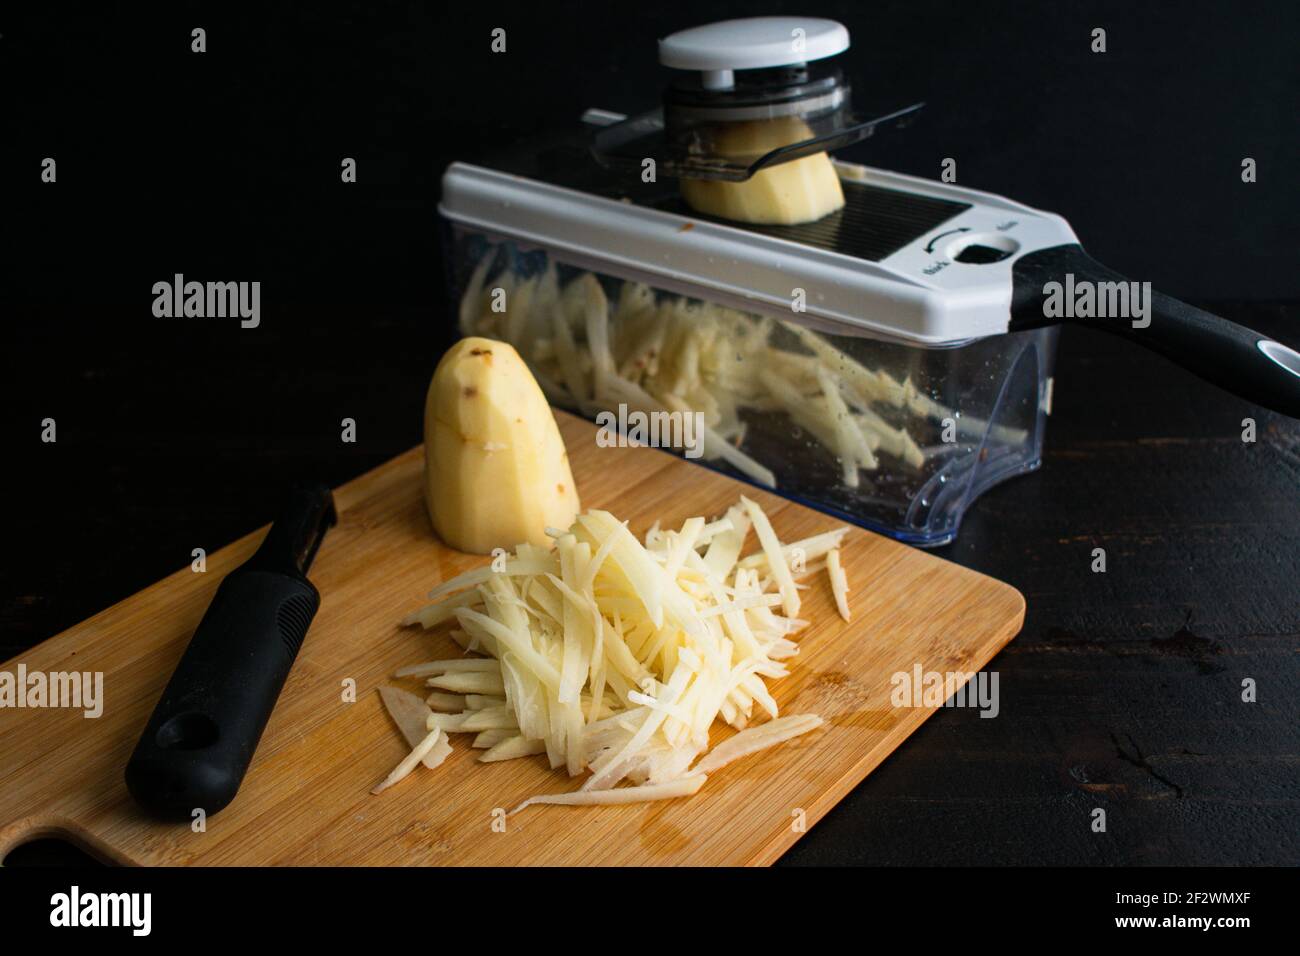 Cortar patatas en tiras con una mandolina: Usar una mandolina para